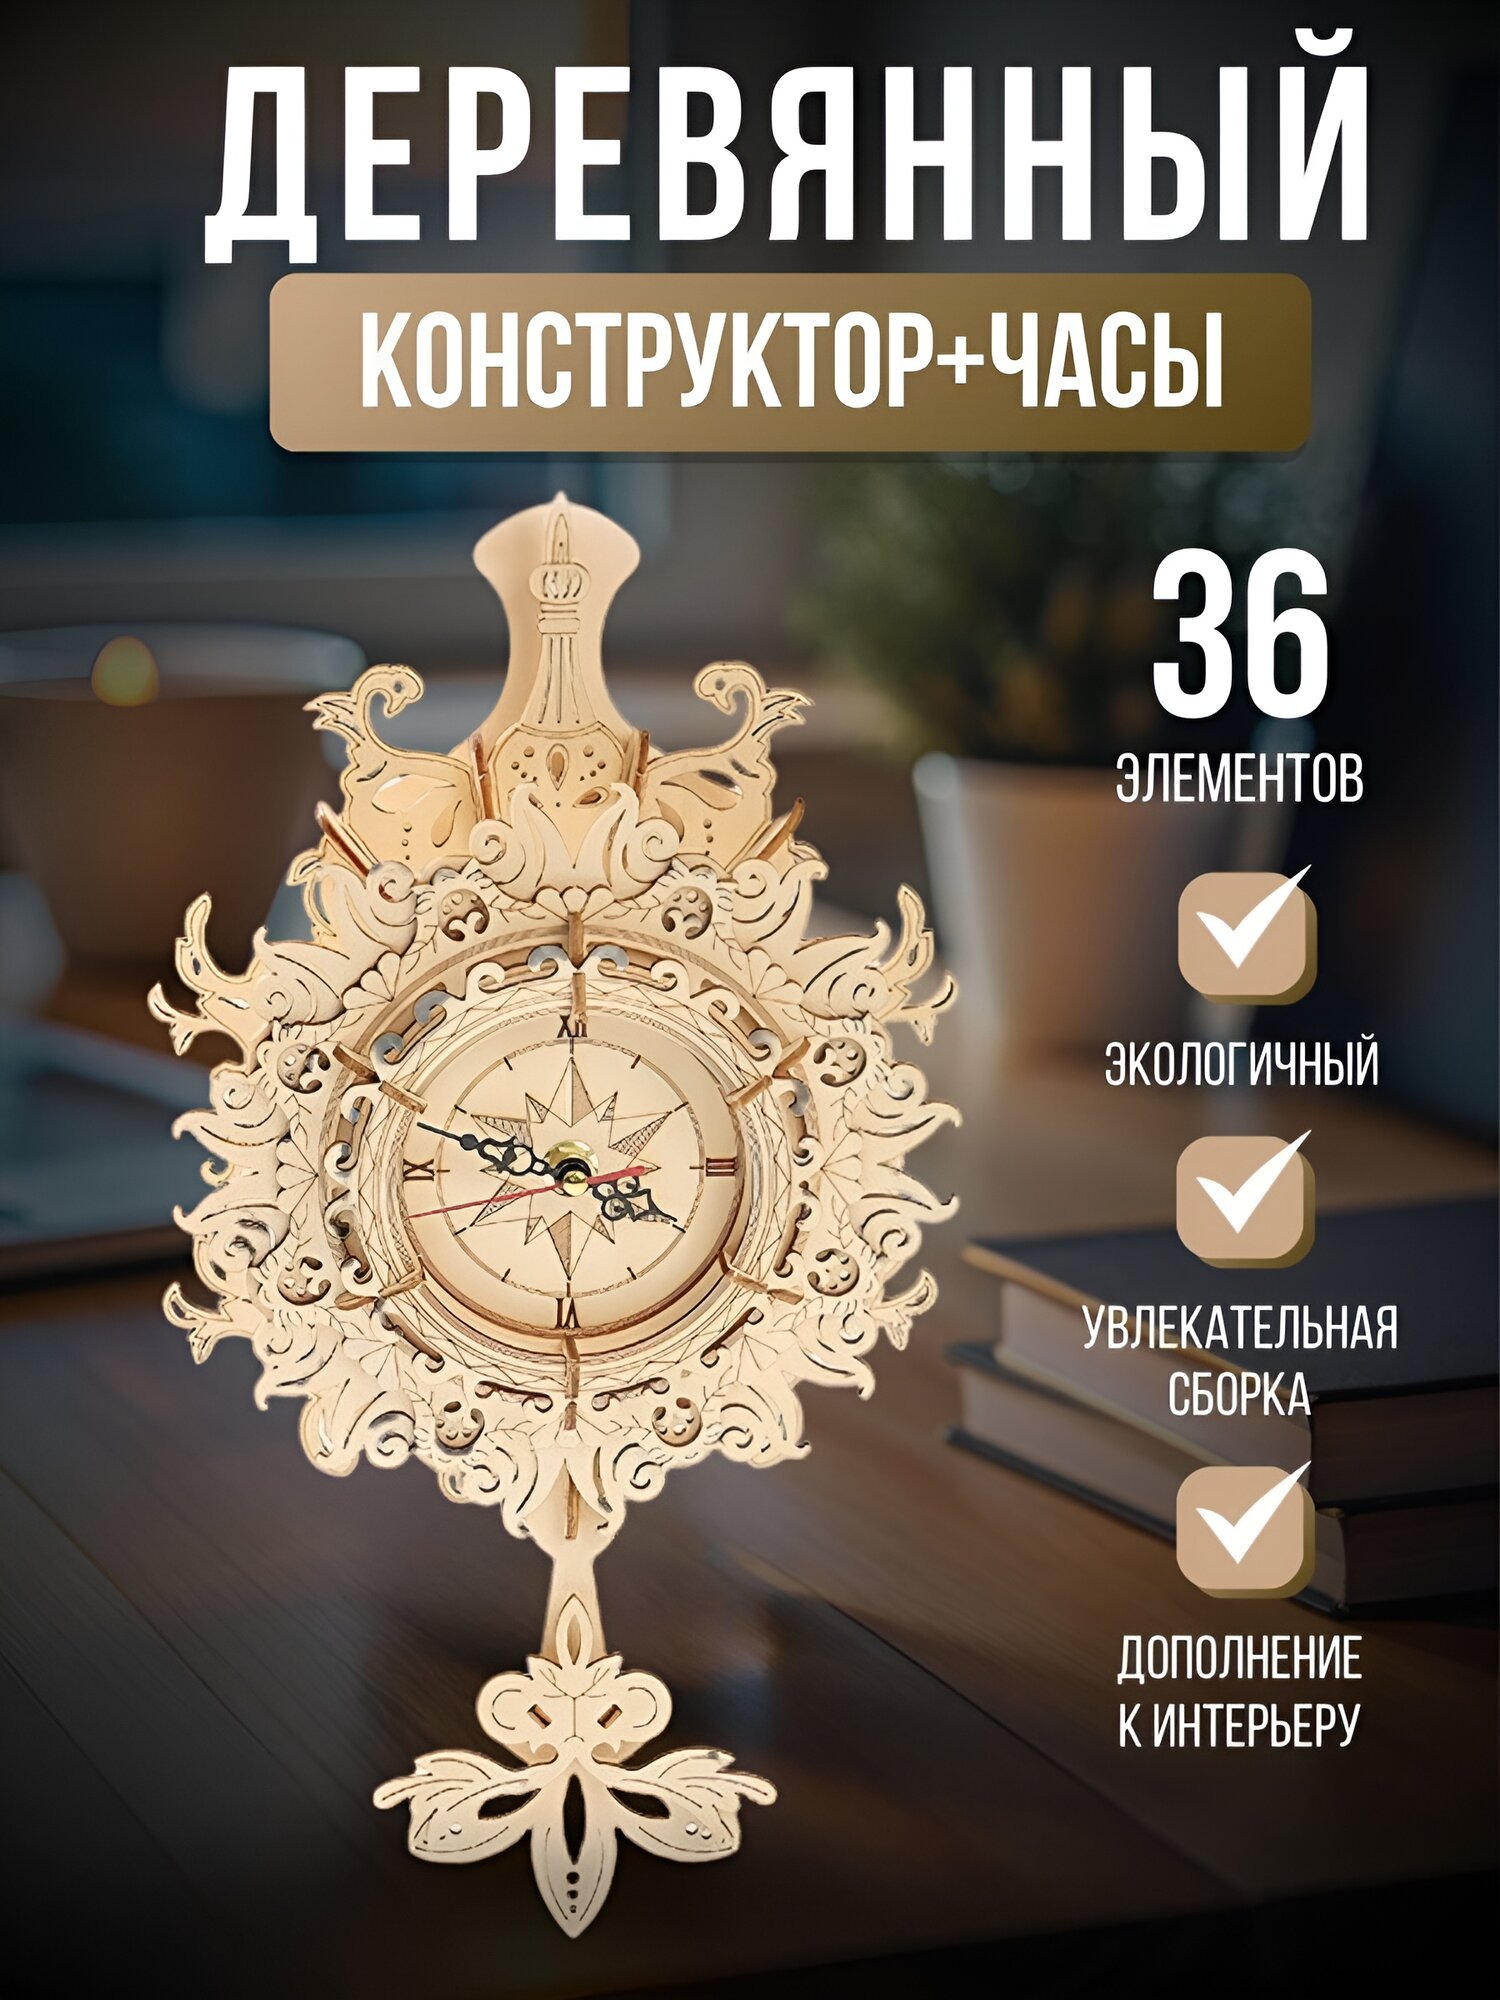 Деревянный конструктор "Часы"